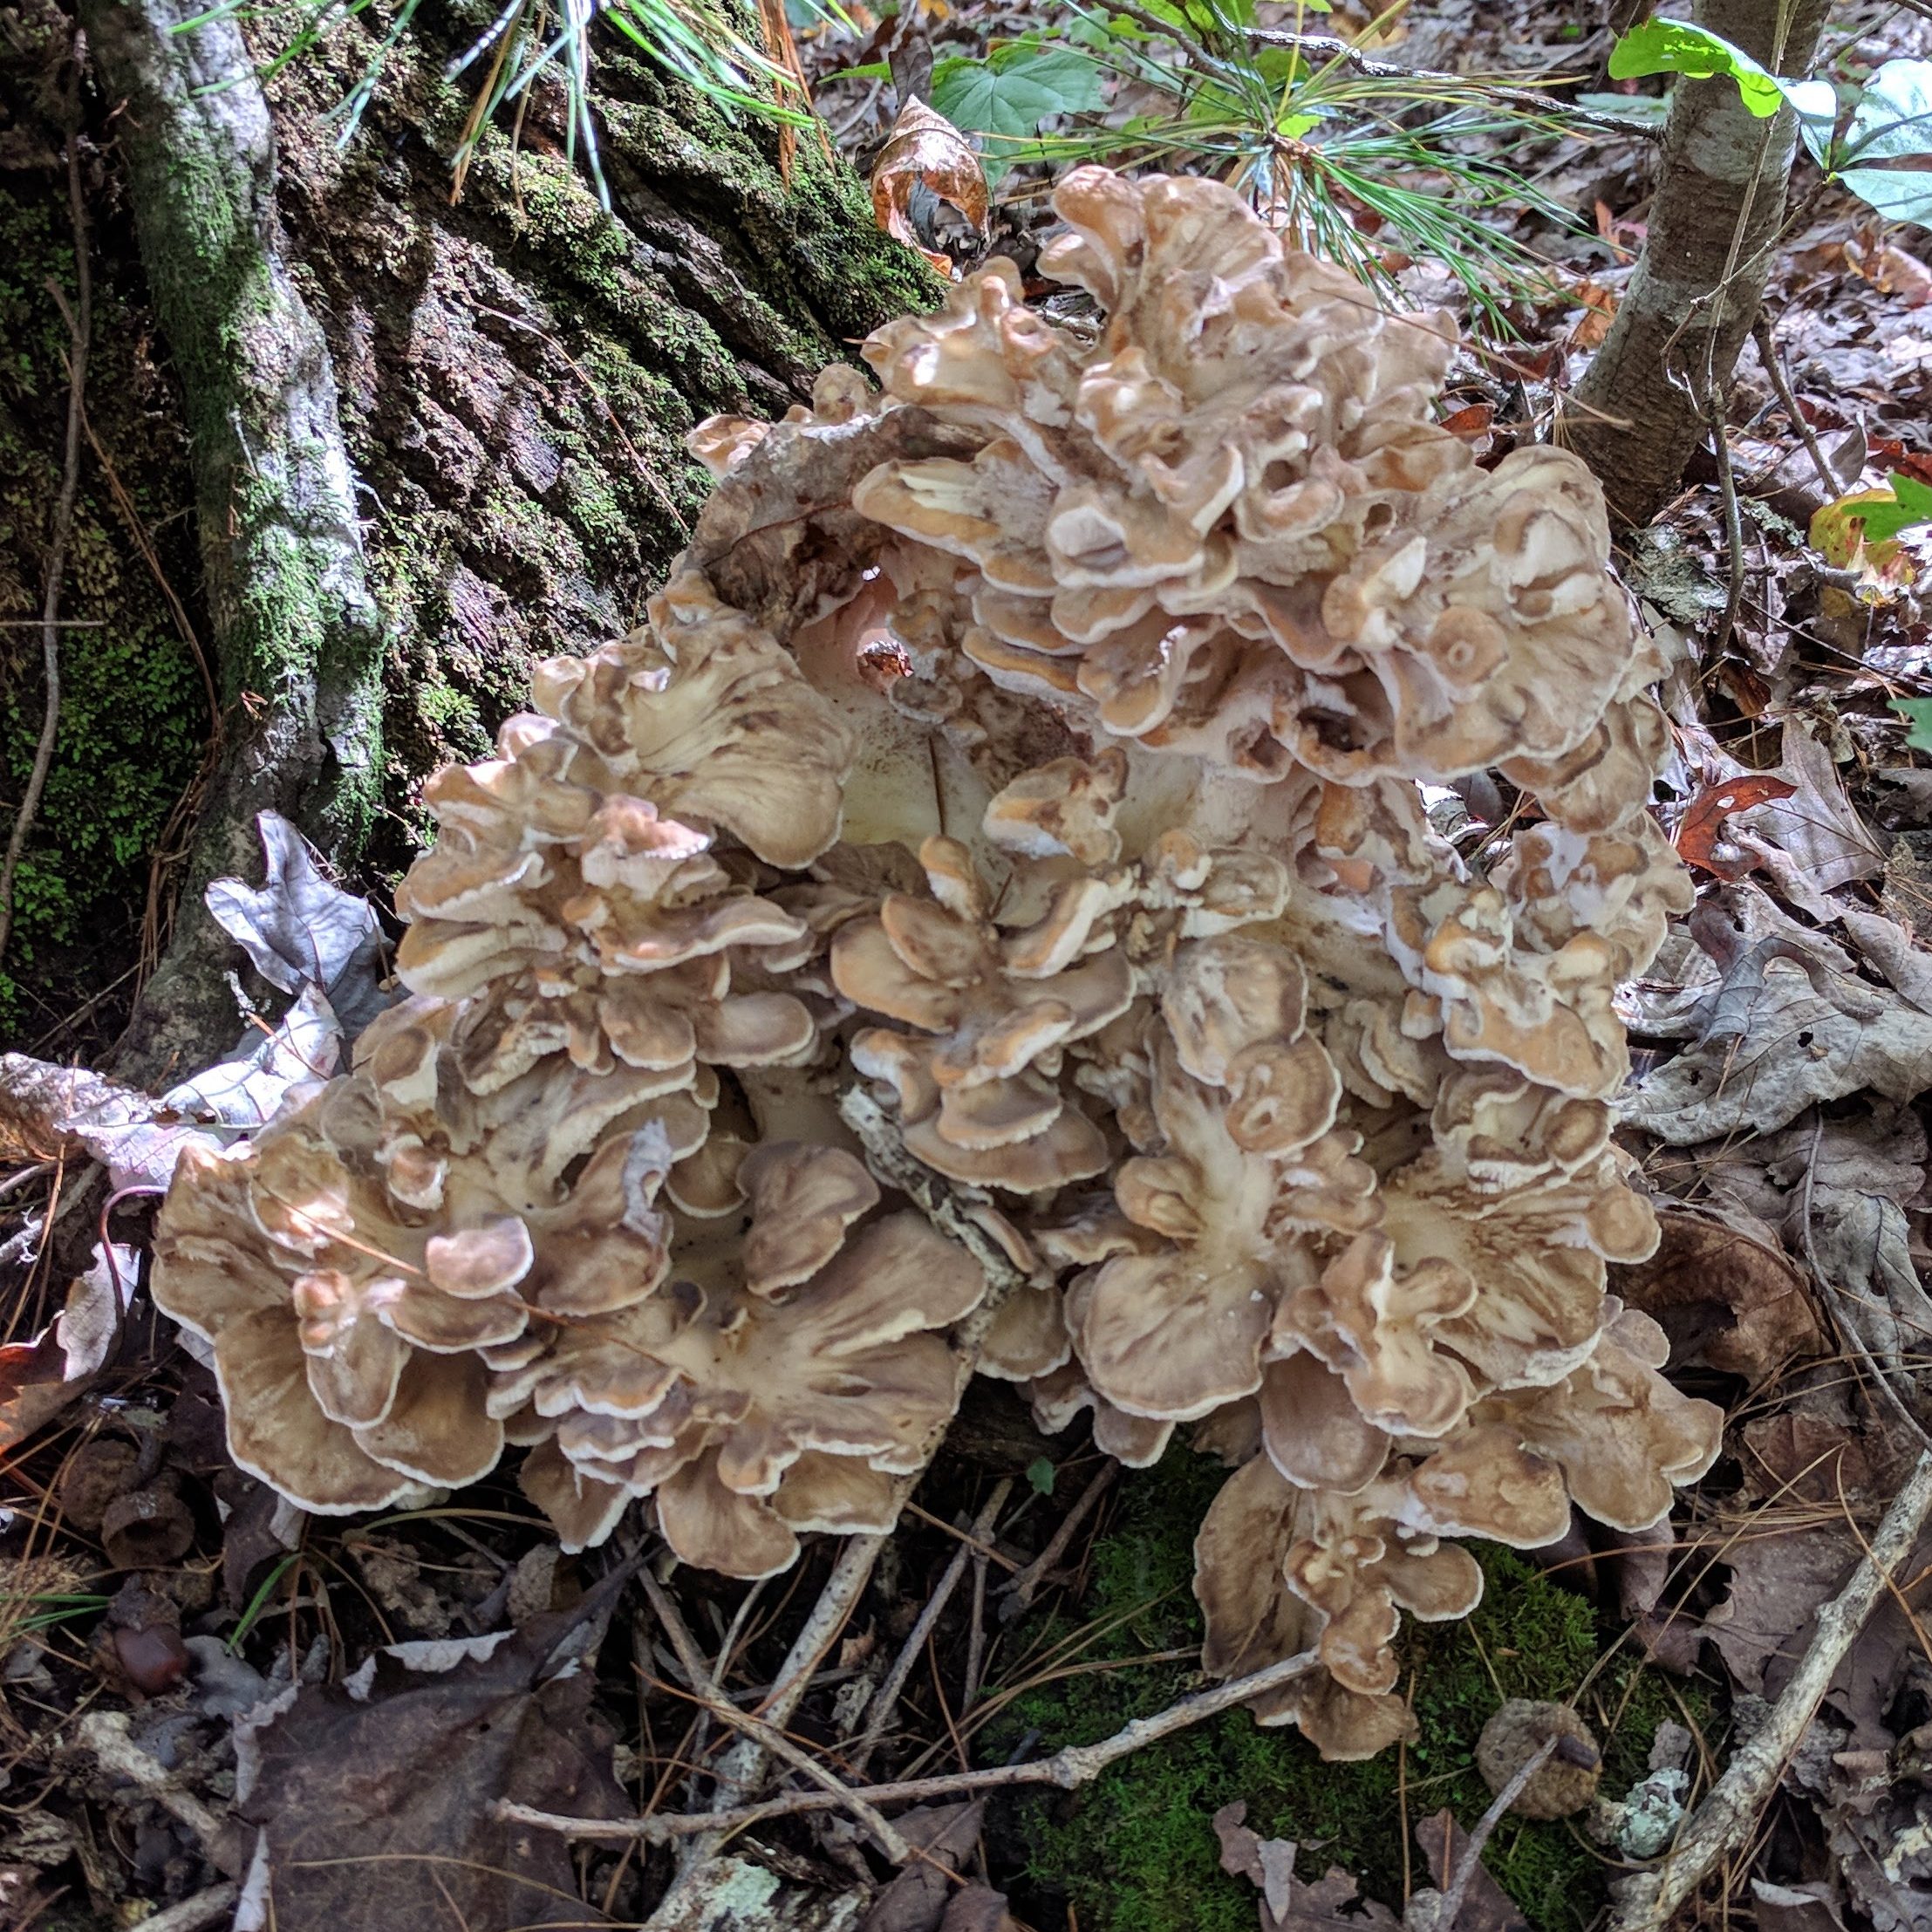 maitake mushroom growing at the base of a tree